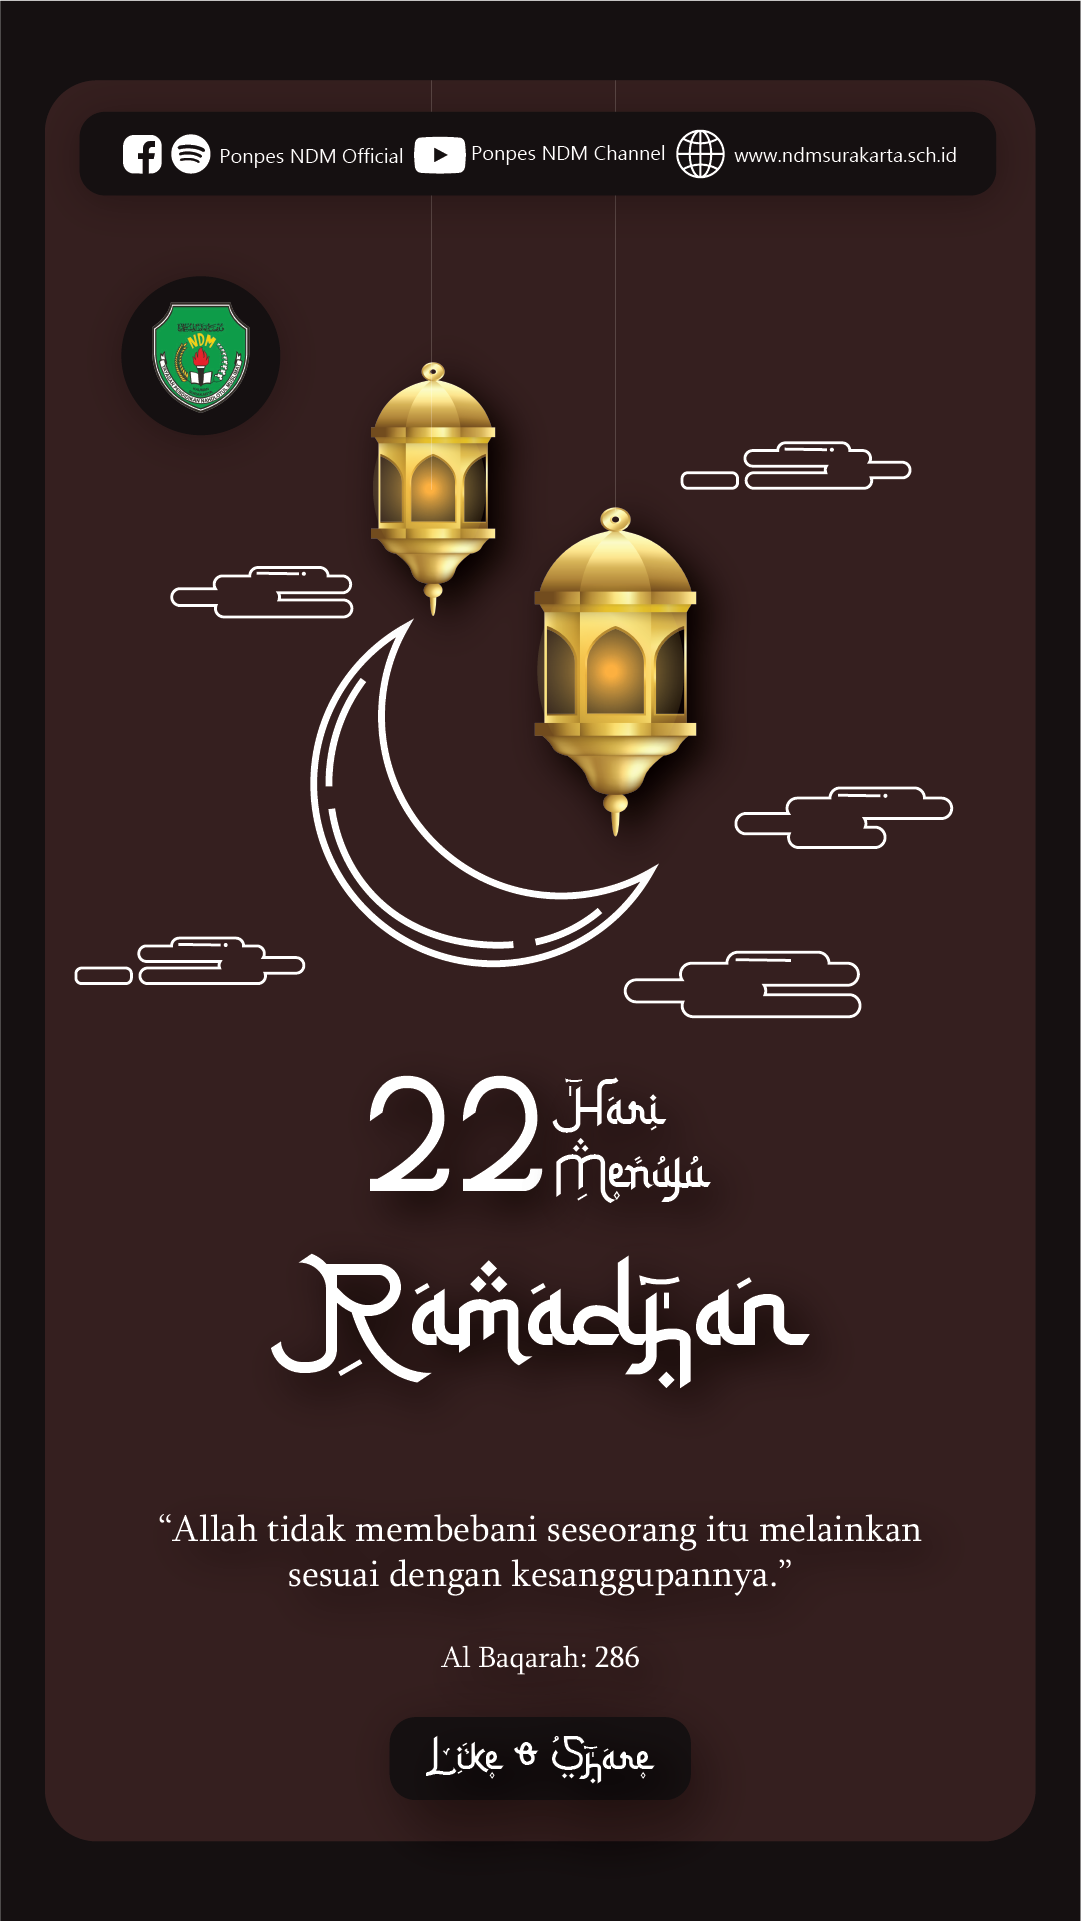 H-22 Menuju Ramadhan 1443 H / 2022 M